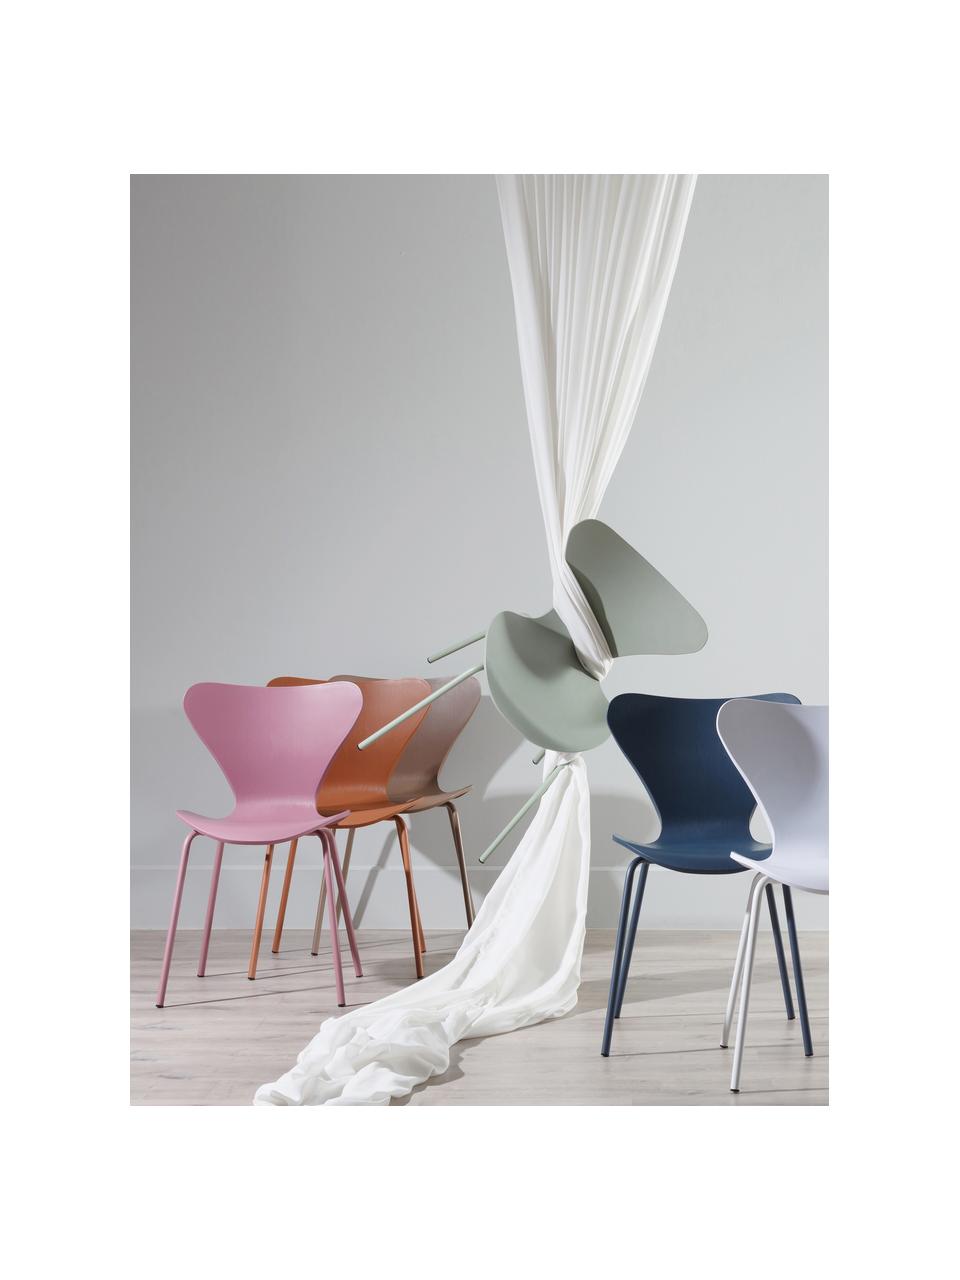 Stapelbare Kunststoffstühle Pippi, 2 Stück, Sitzfläche: Polypropylen, Beine: Metall, beschichtet, Violett, B 47 x T 50 cm